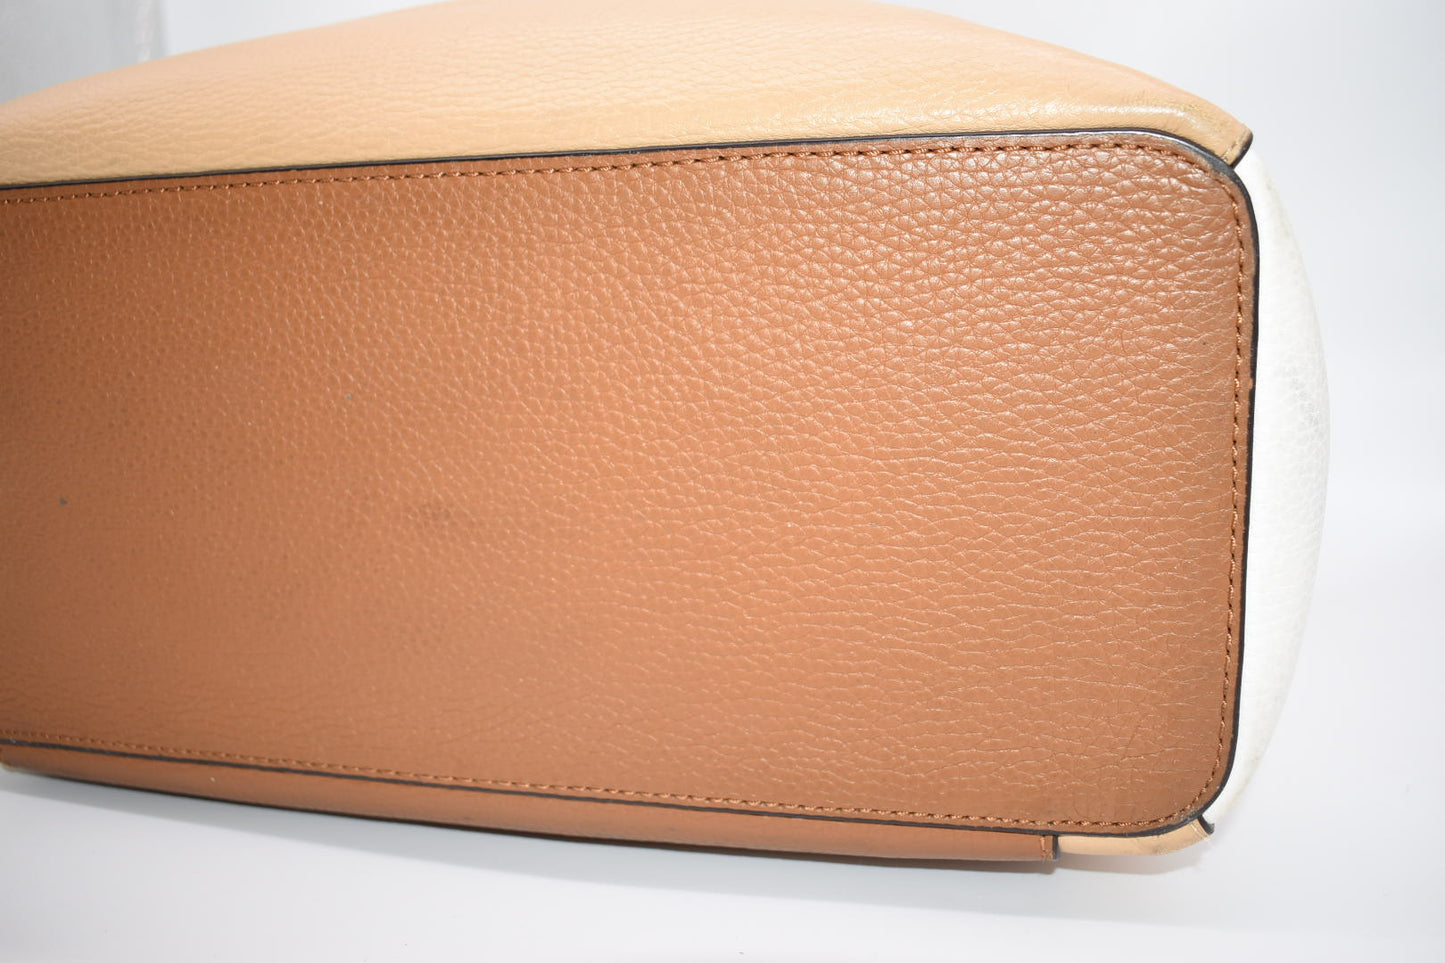 Michael Kors Leather "Gemma" Large Pocket Tote Bag